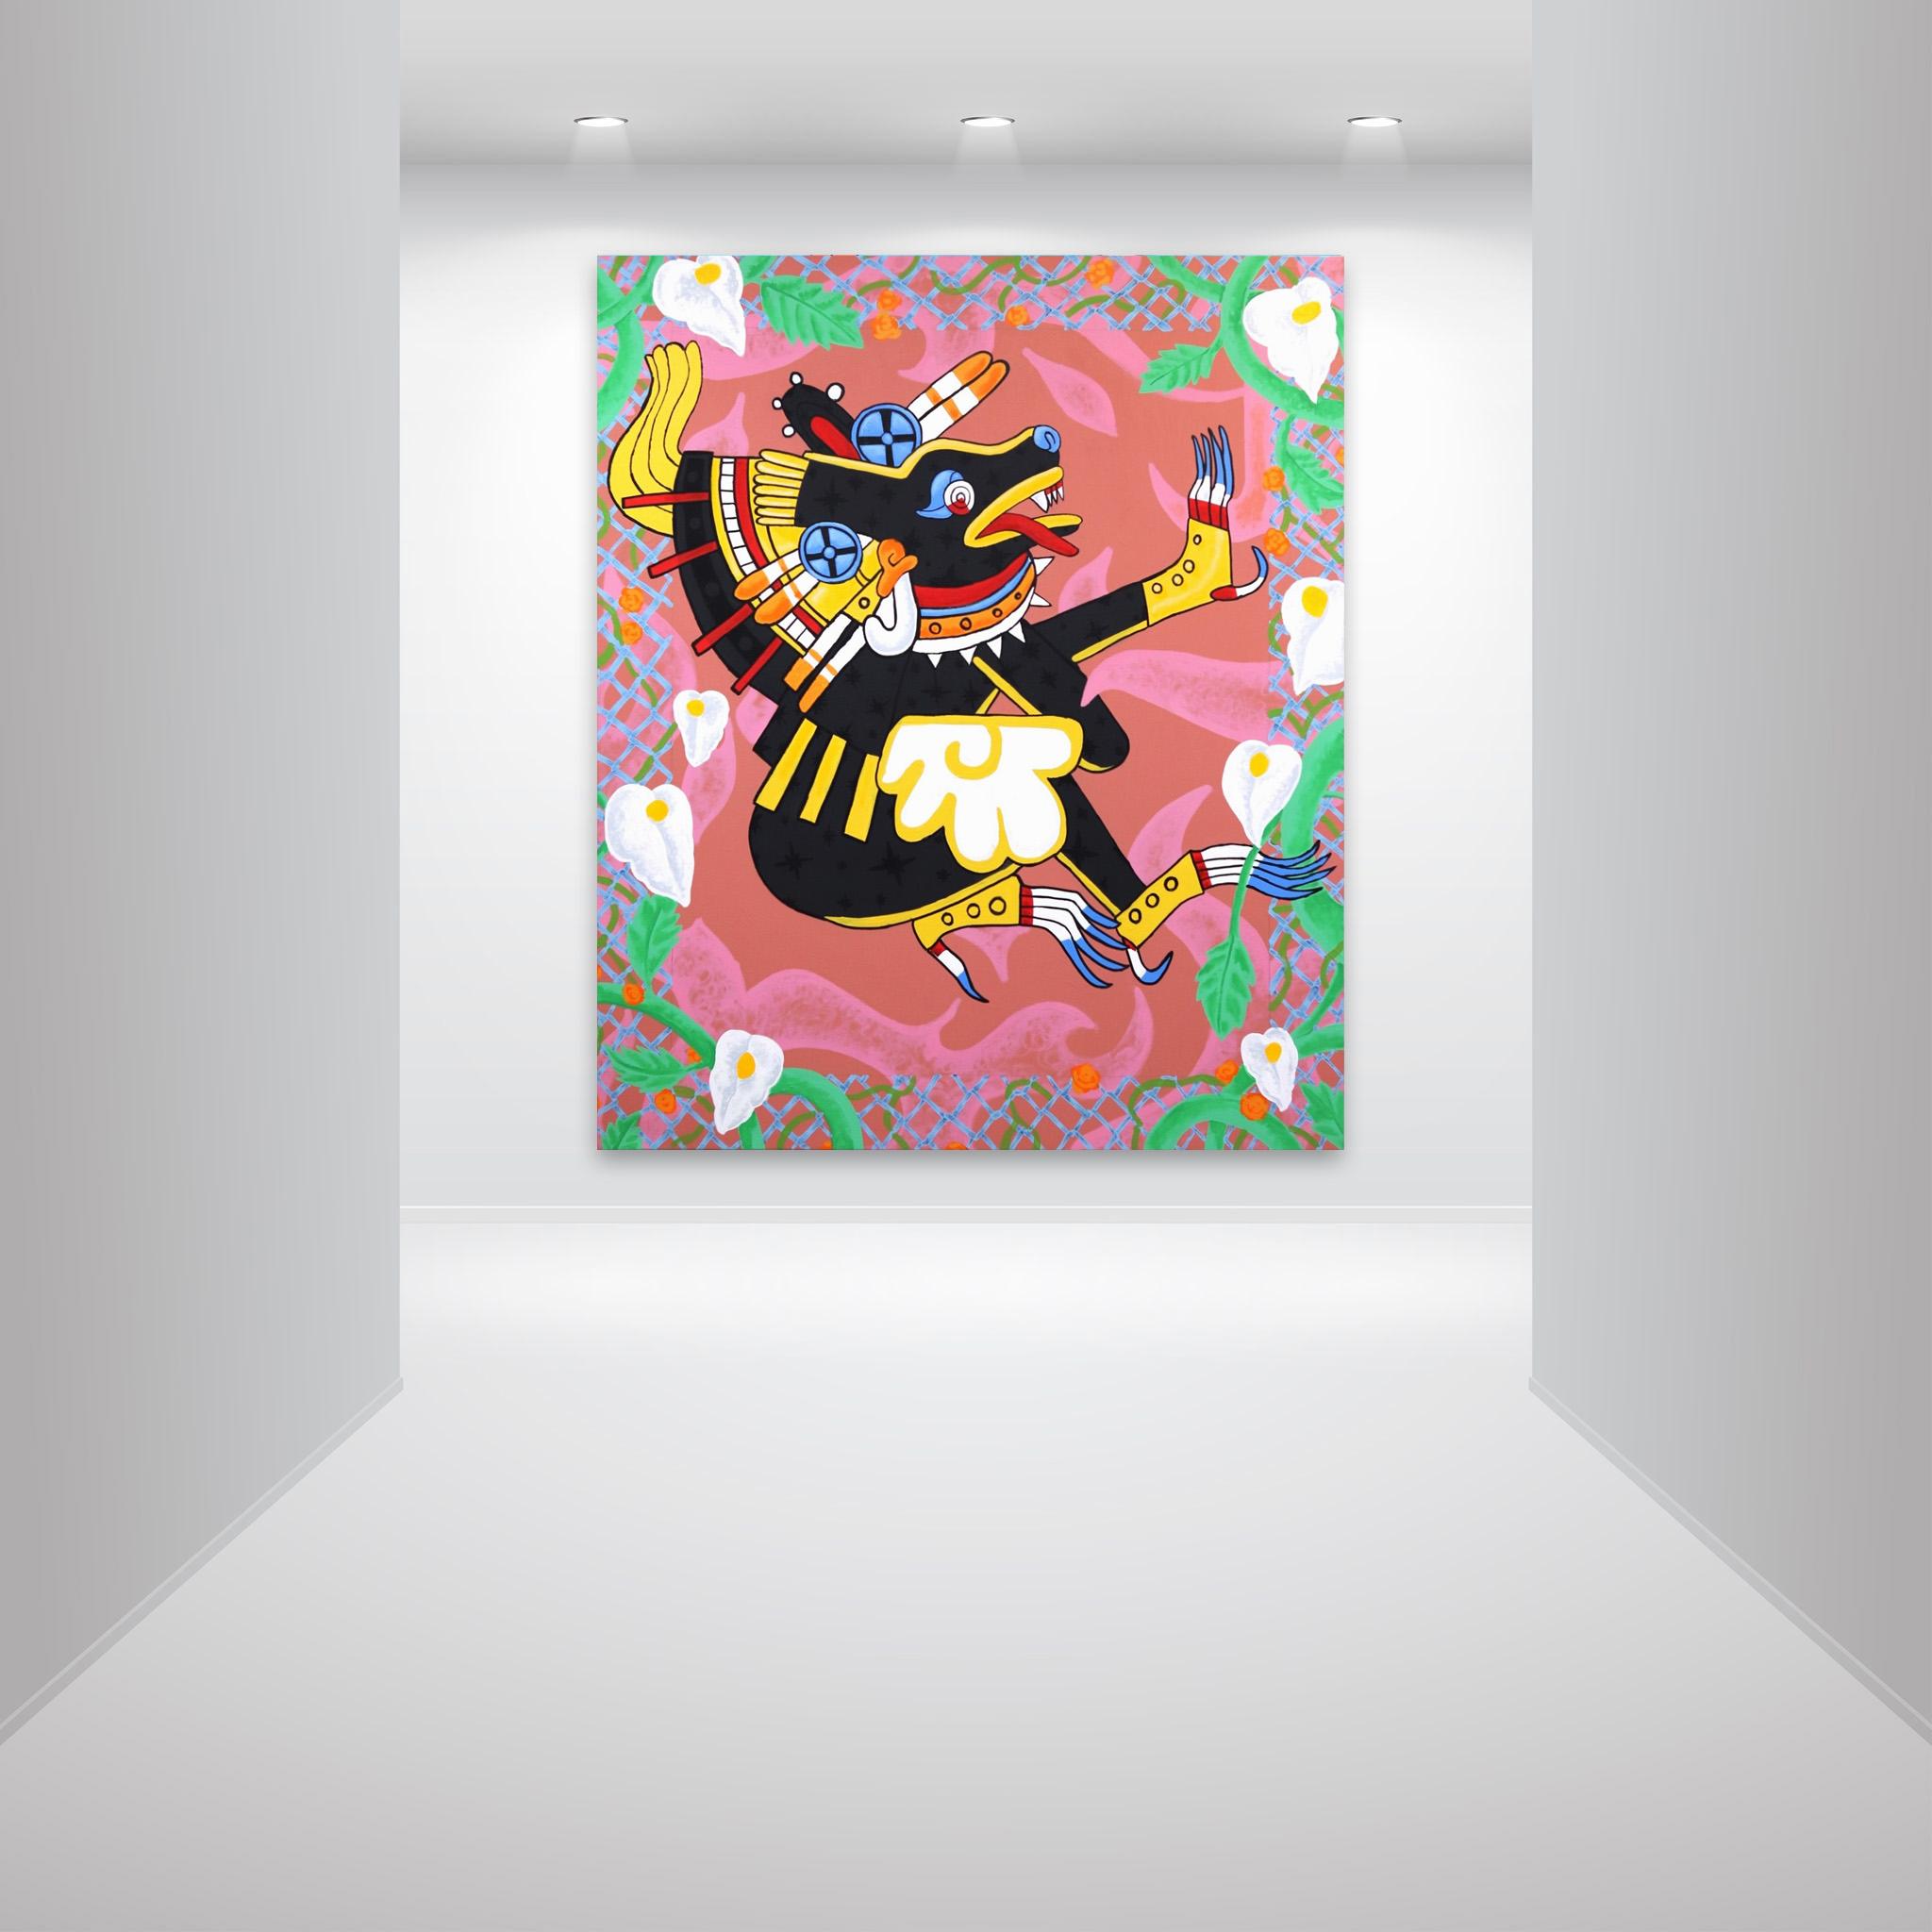 Para Todos Los Sonadores Y Sonadoras – Großes Originalgemälde auf Leinwand – Painting von Danny Brown